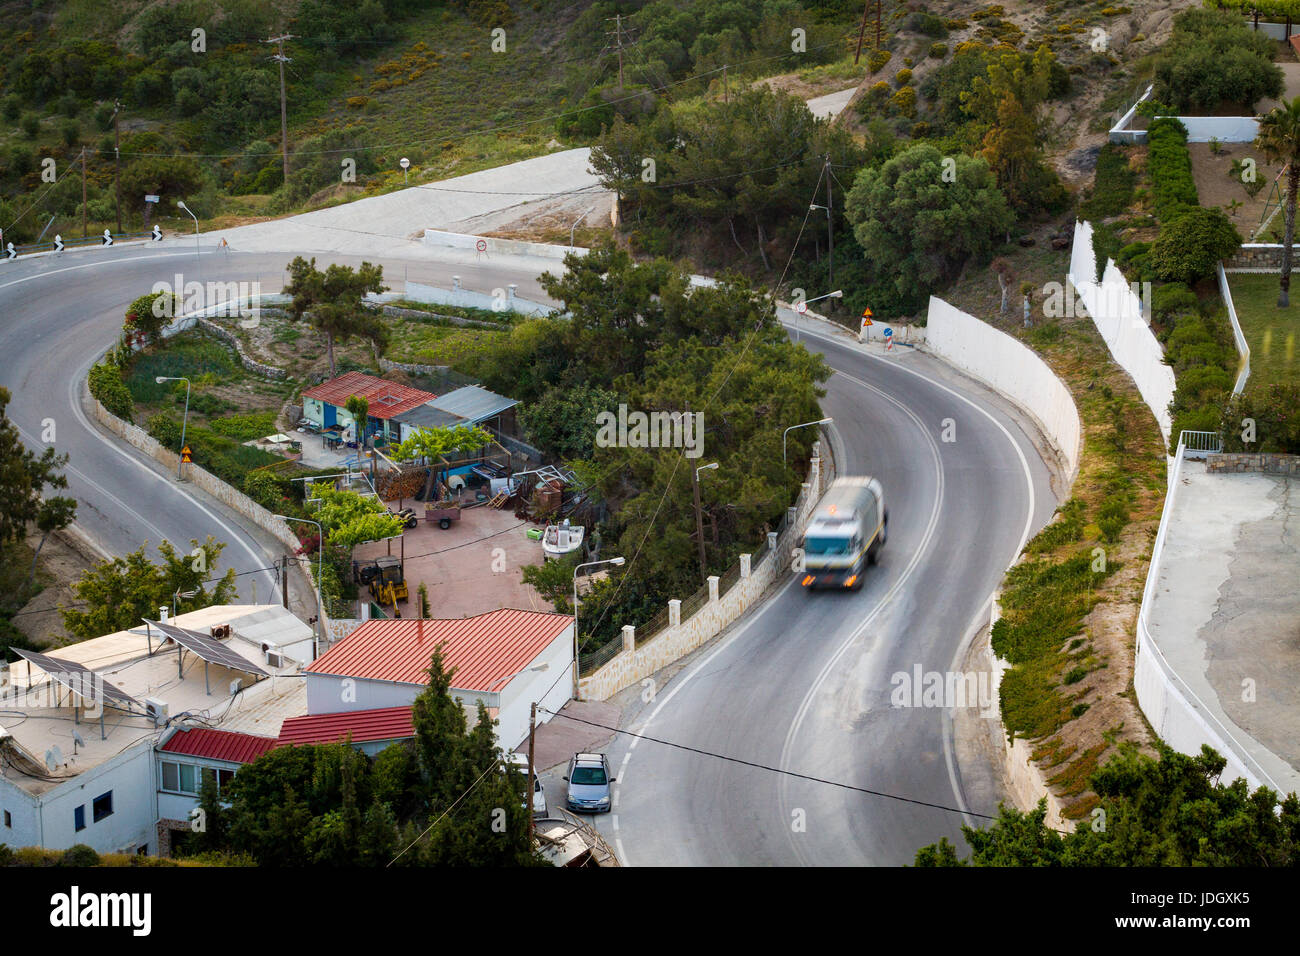 La courbe de la route de la route près de Kefalos village, avec camion poubelle de travail du matin. L'autoroute nationale de Grèce Kos Island. Banque D'Images